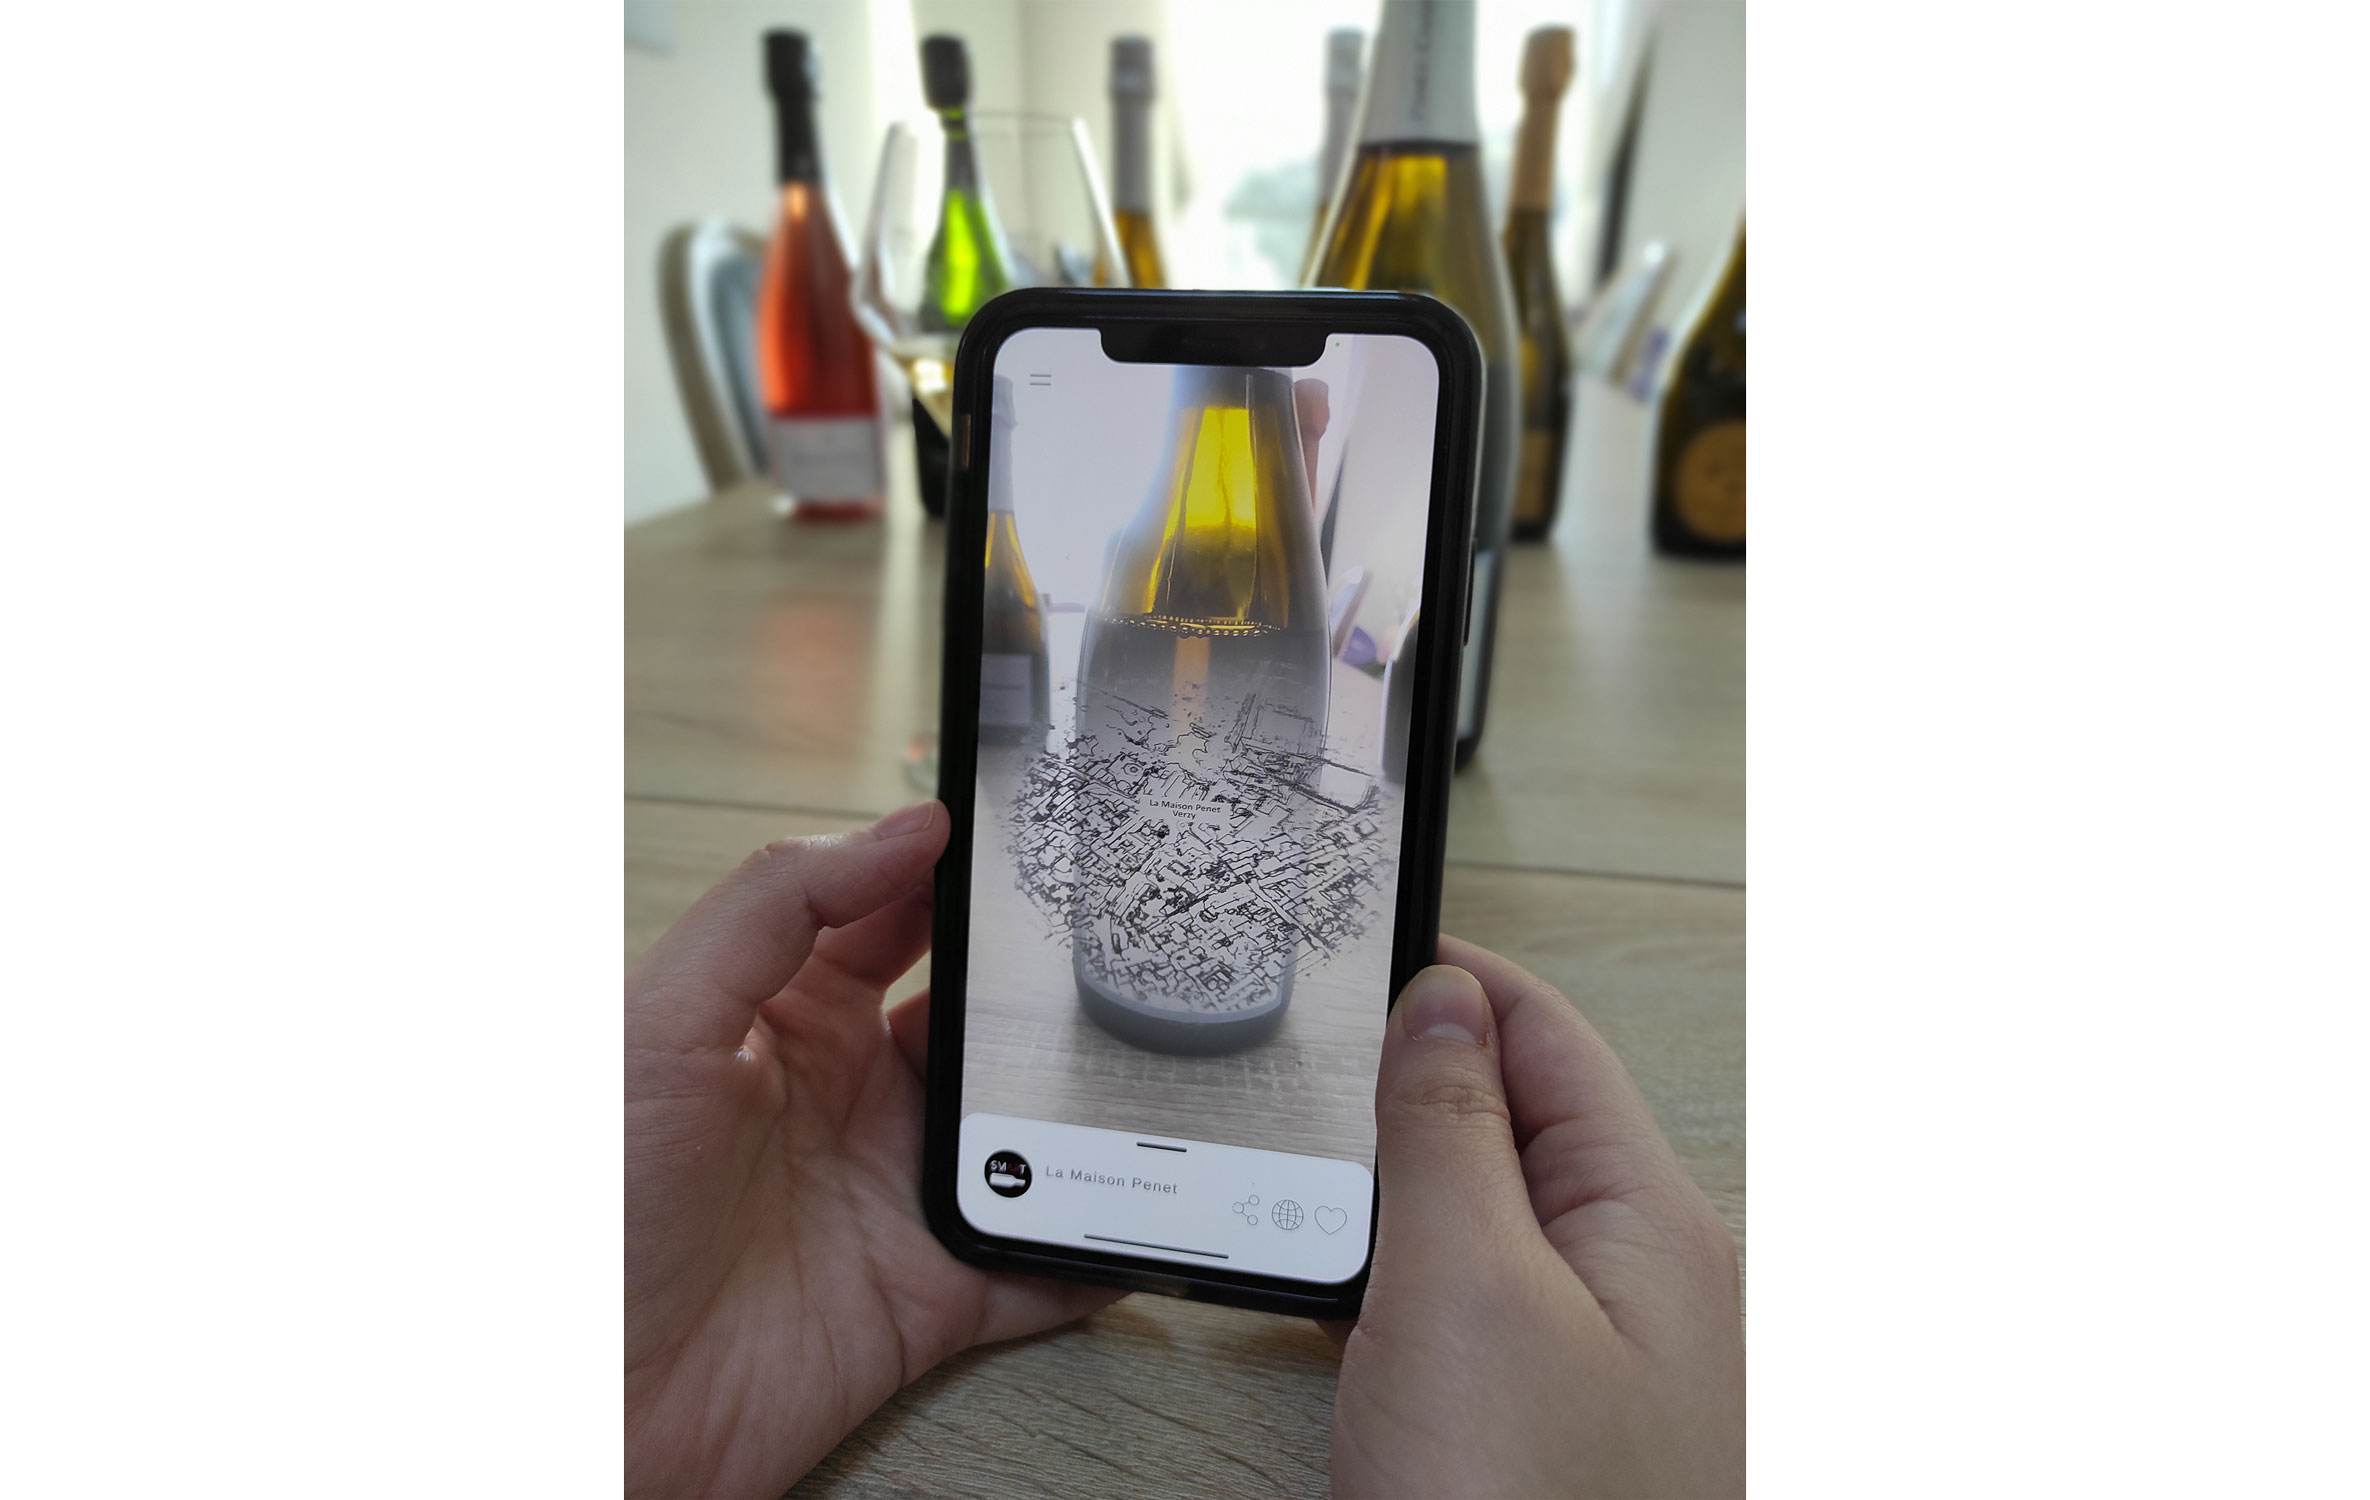 Le Champagne sur l’appli Smartbottle - Crédit : Maison Penet – Smart Bottle